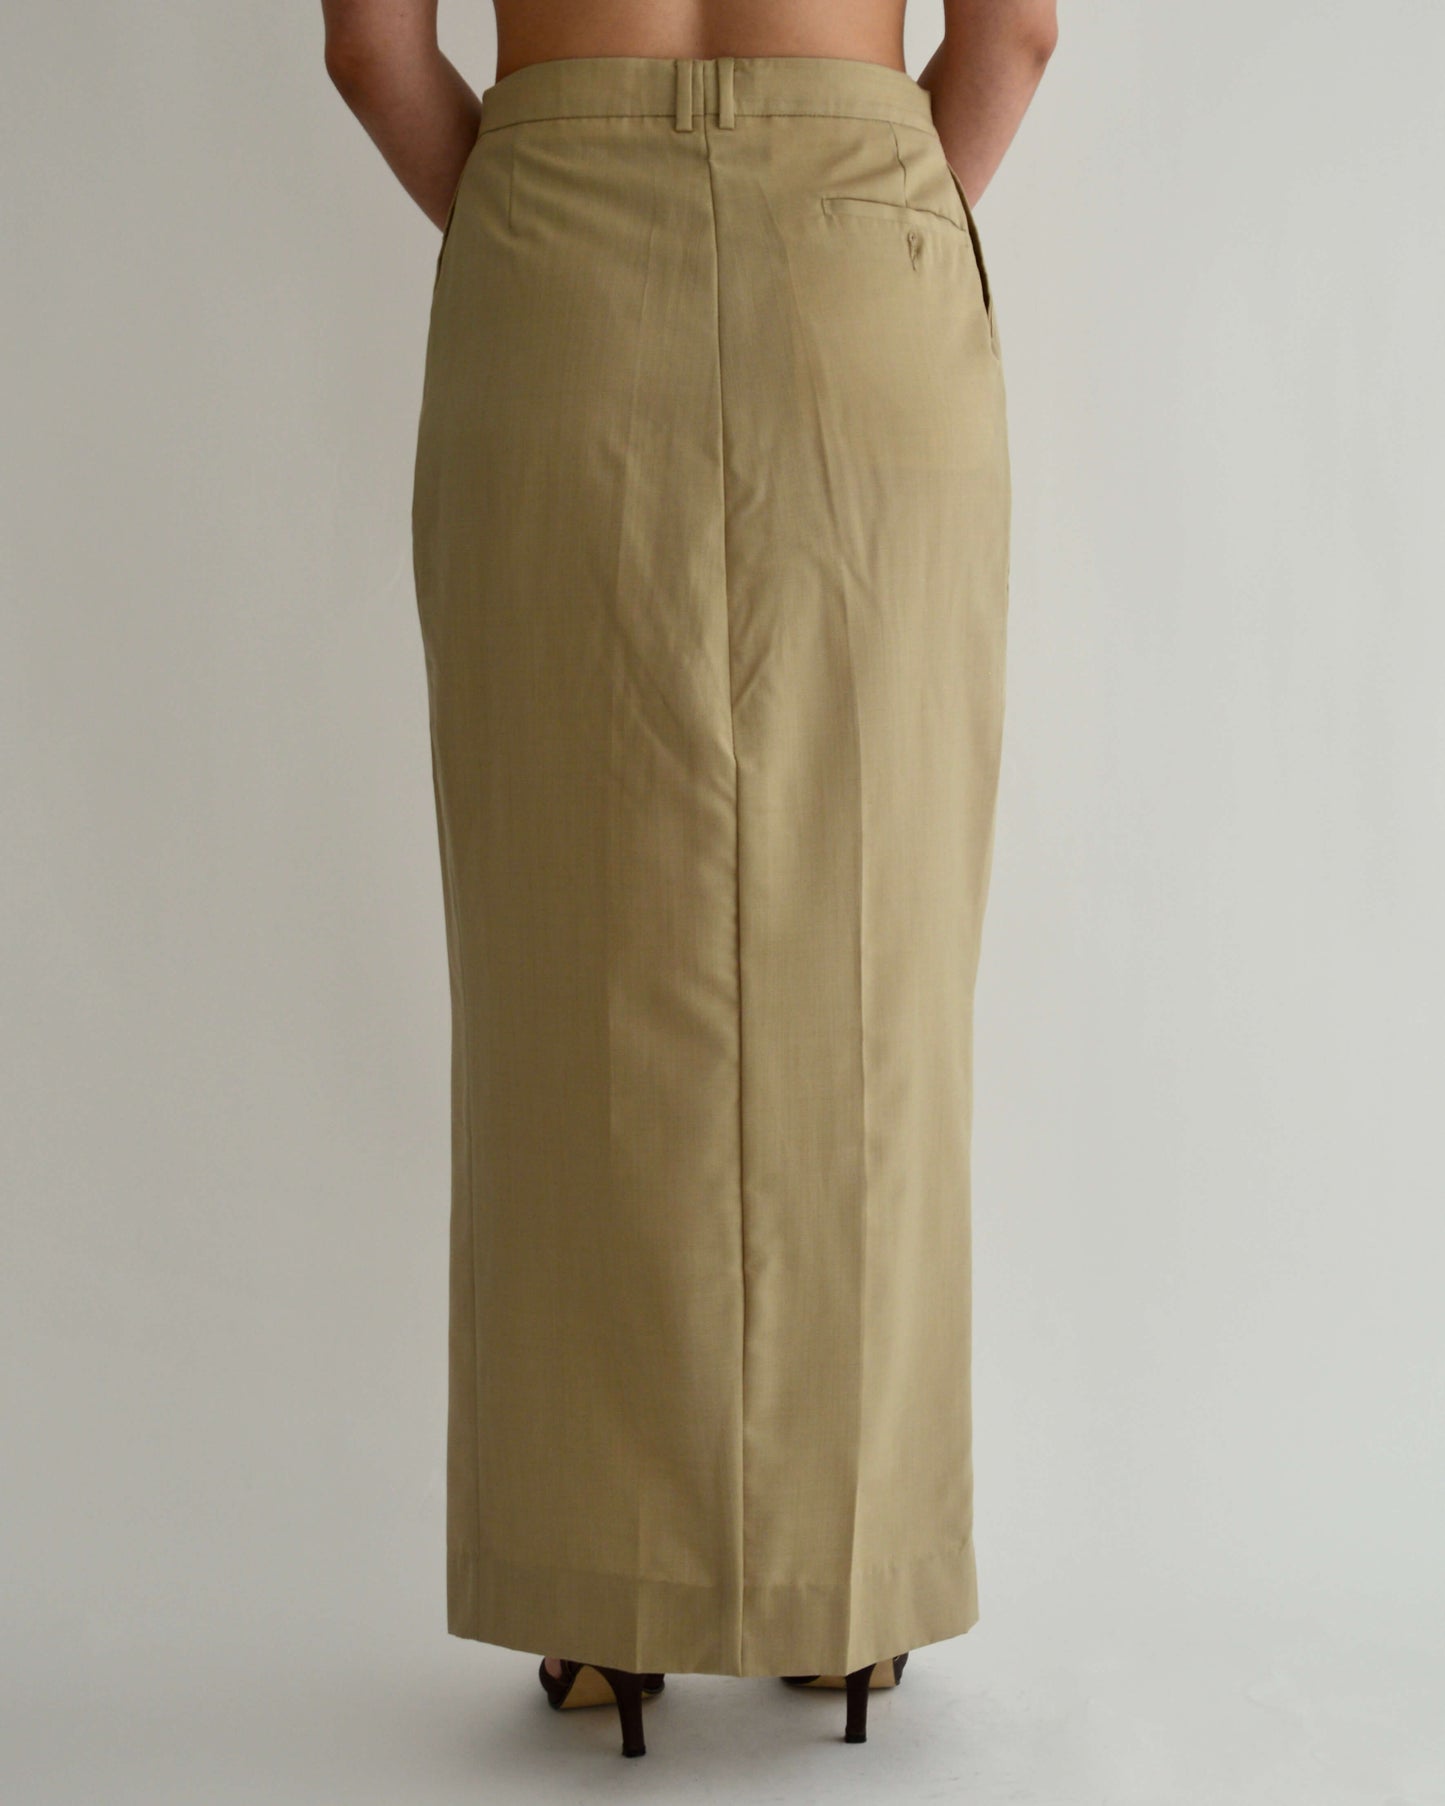 Long Skirt - Golden (M/L)